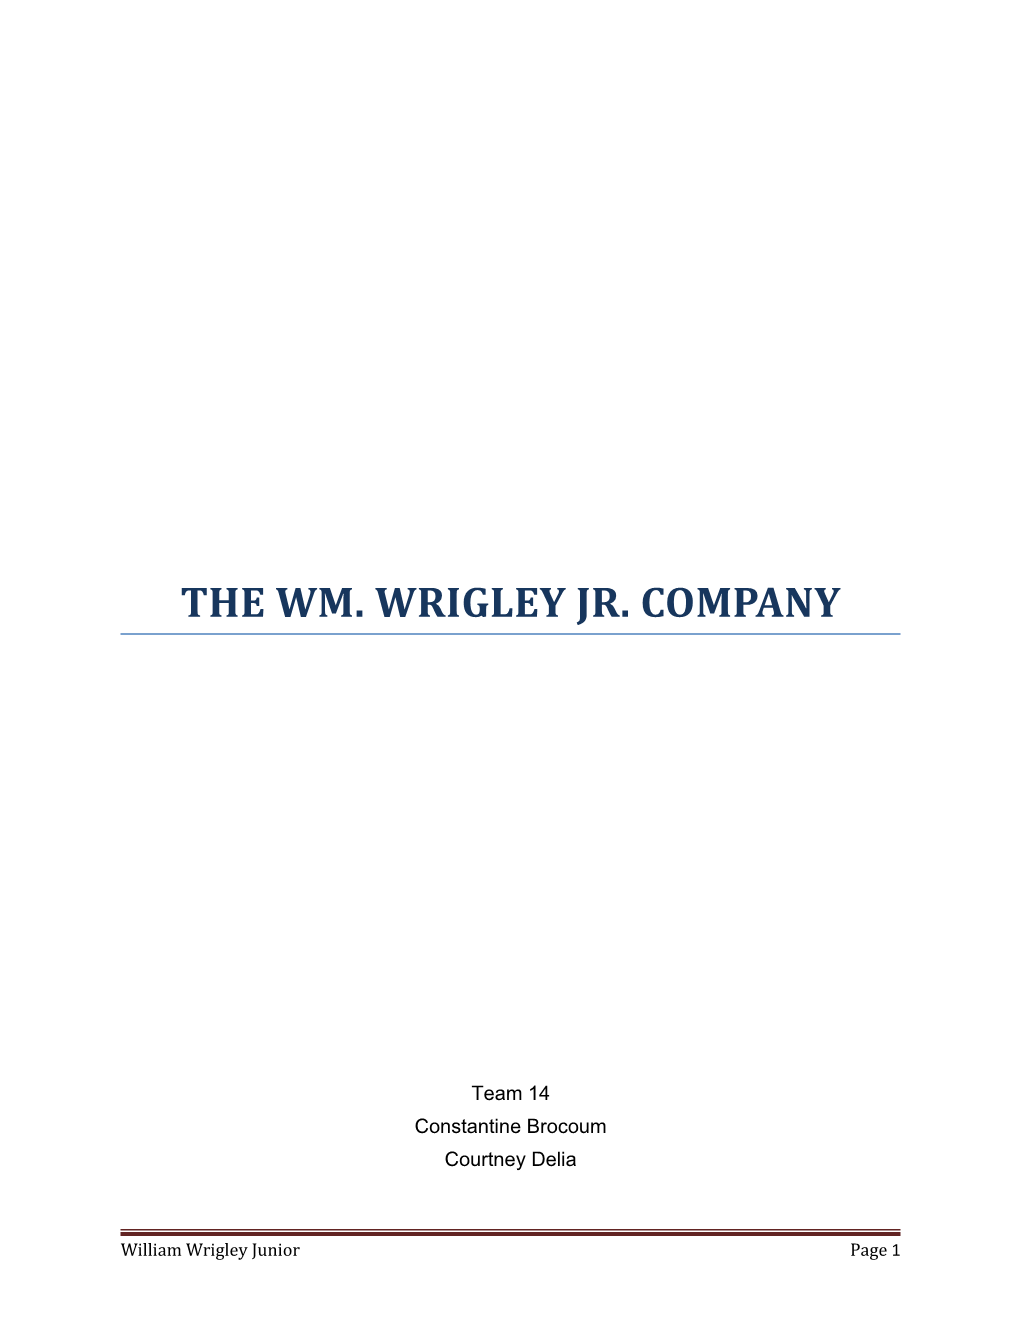 The Wm. Wrigley Jr. Company